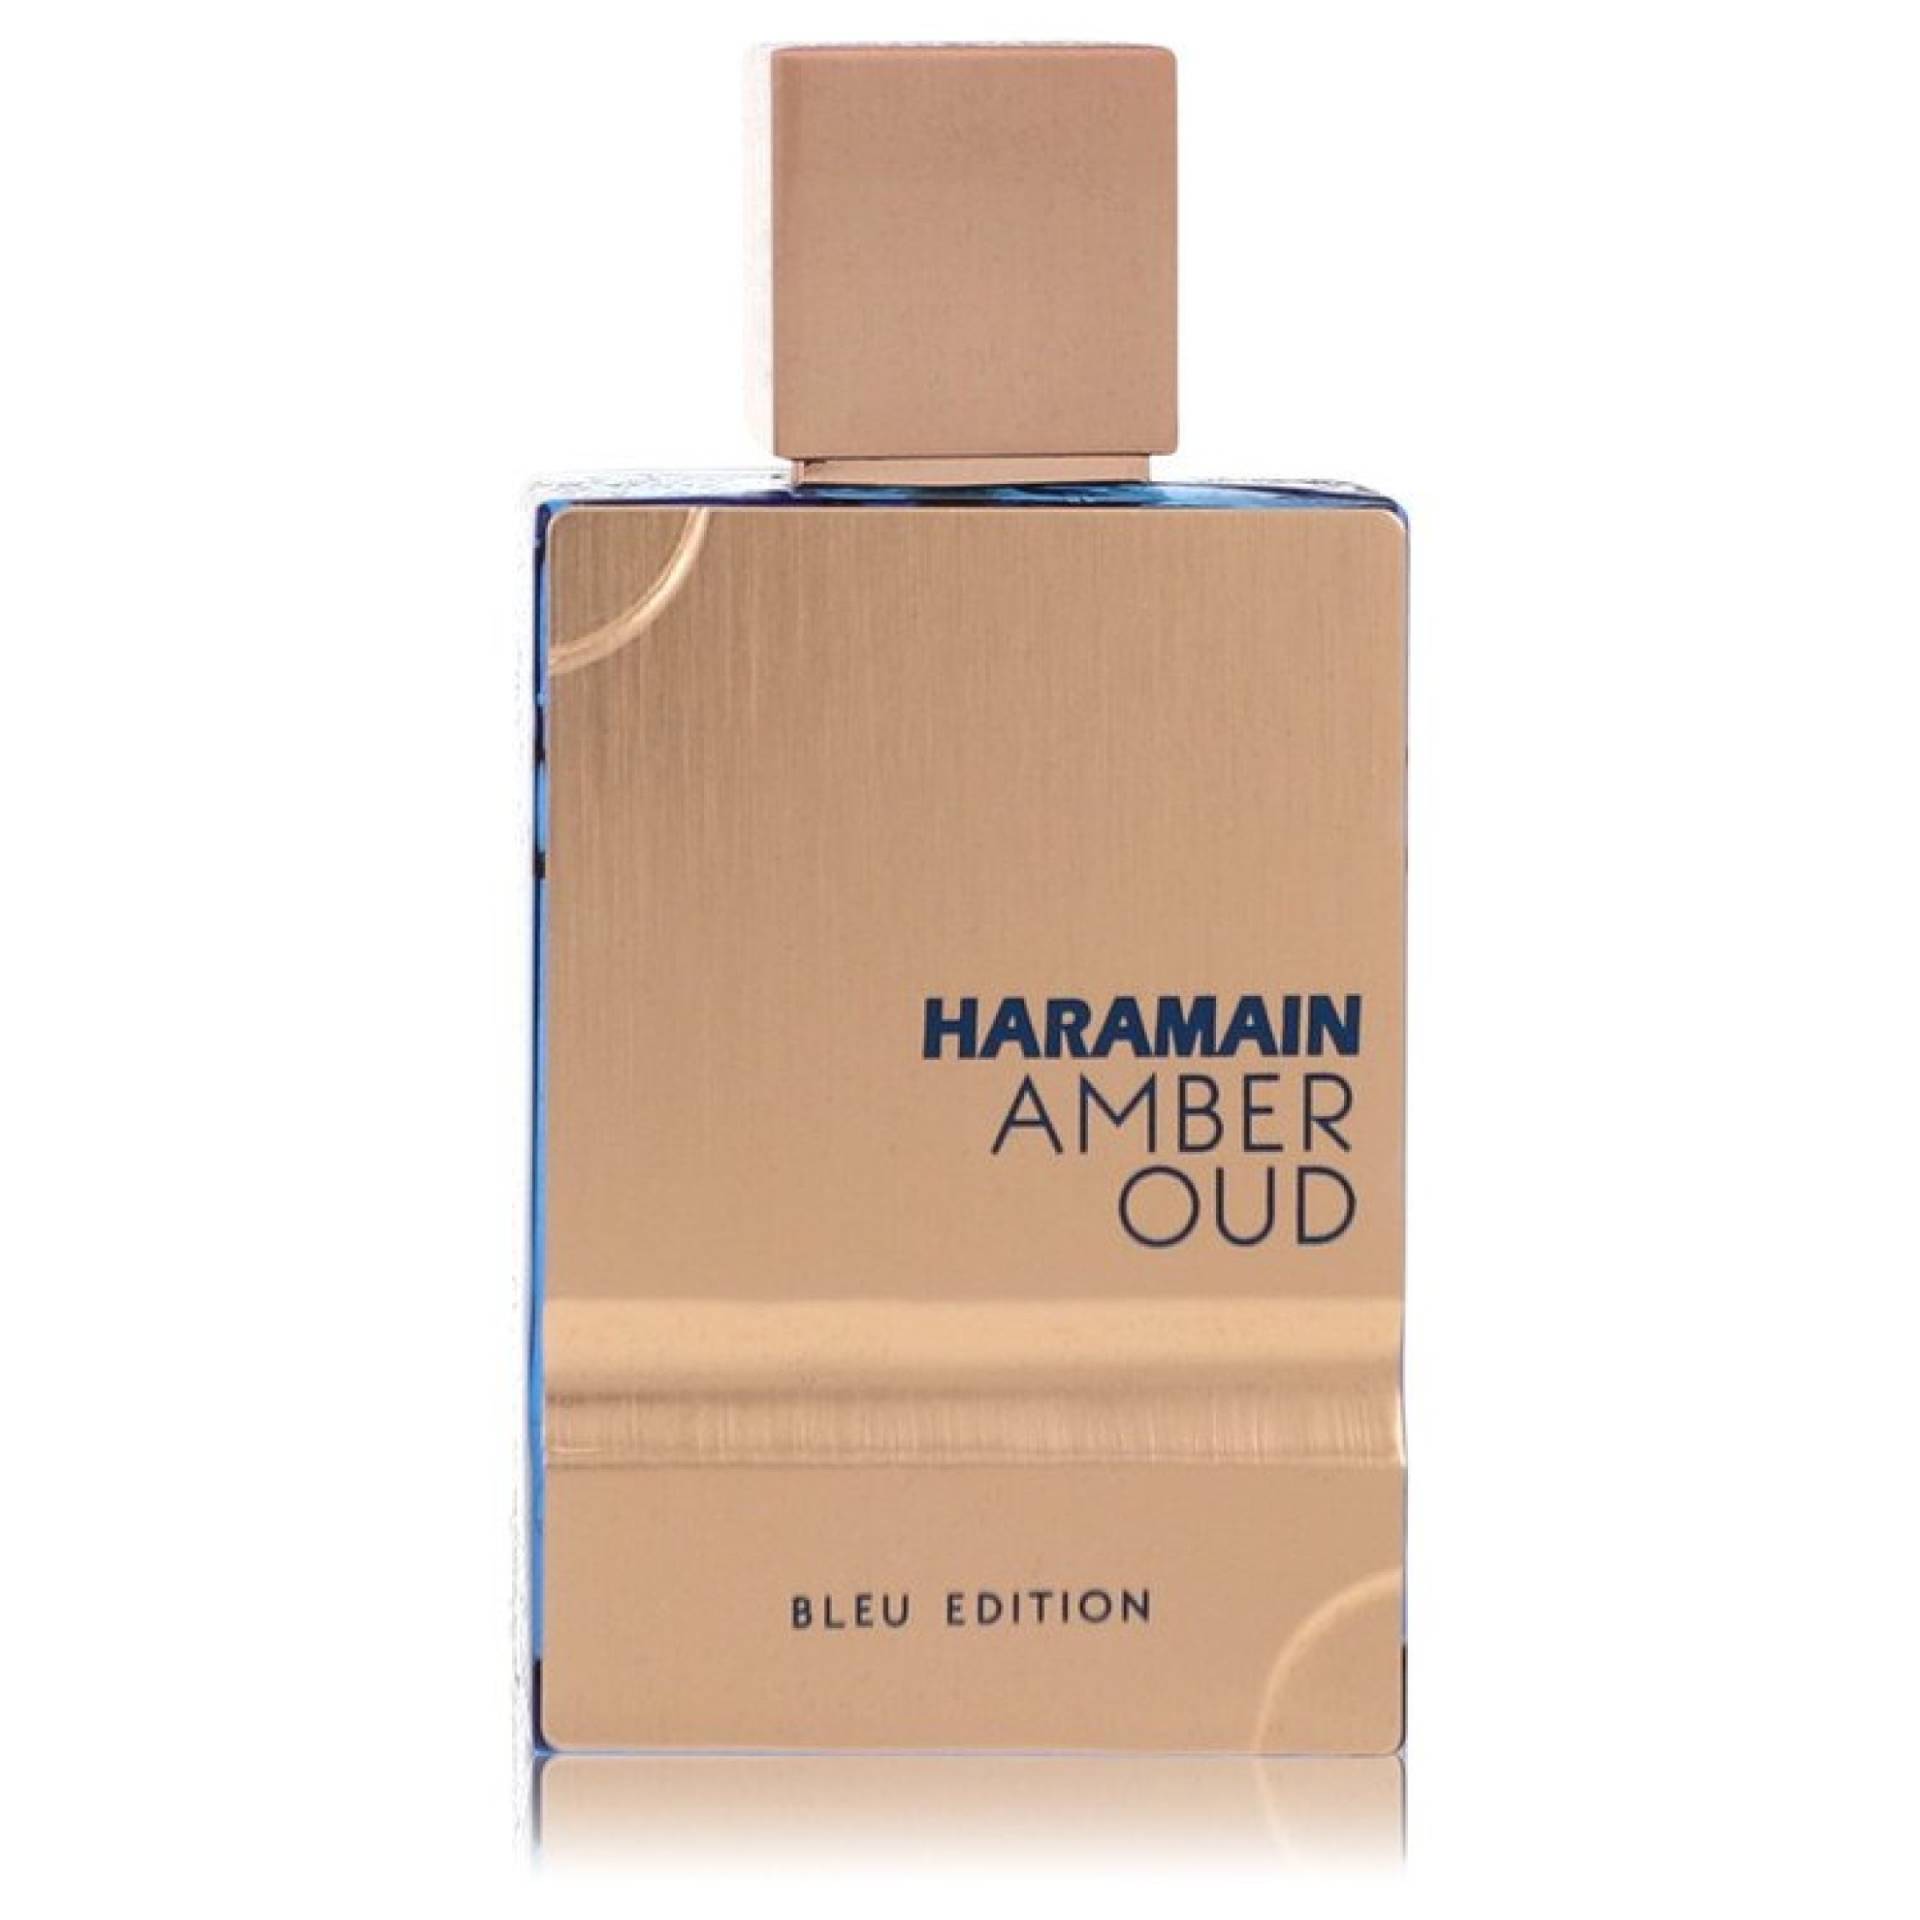 Al Haramain Amber Oud Bleu Edition Eau De Parfum Spray (Unboxed) 60 ml von Al Haramain